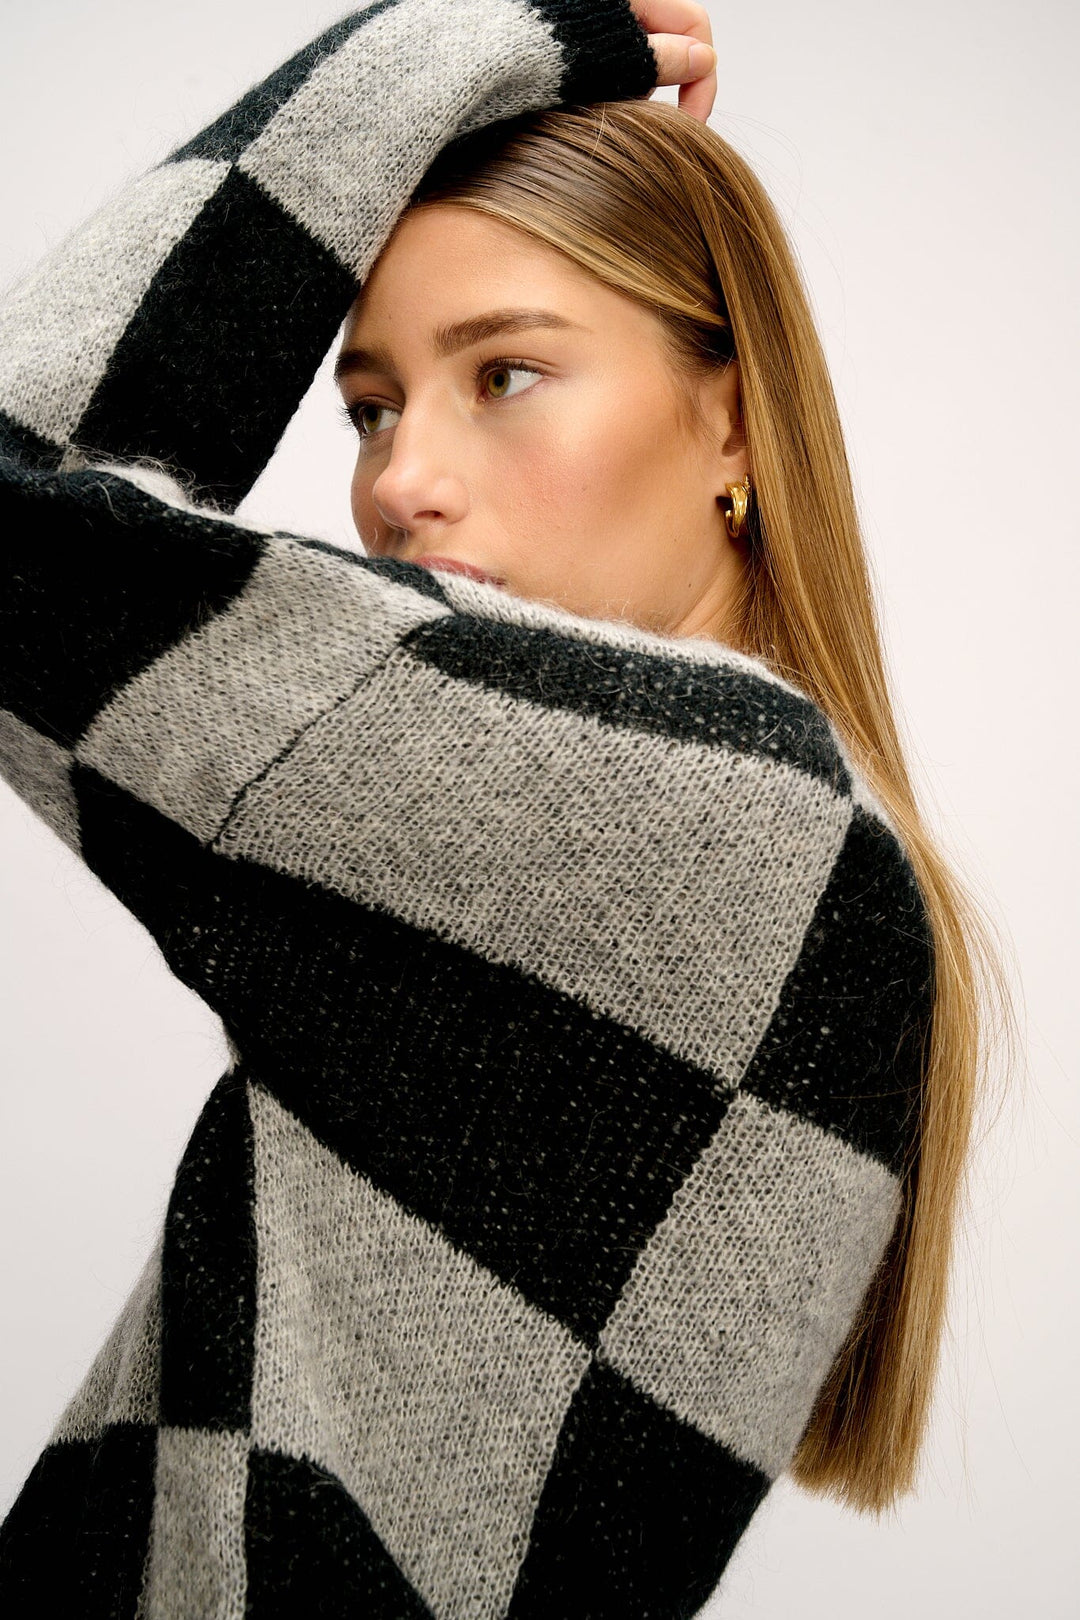 Noella - Kiana Knit Sweater - Black/Grey Strikbluser 